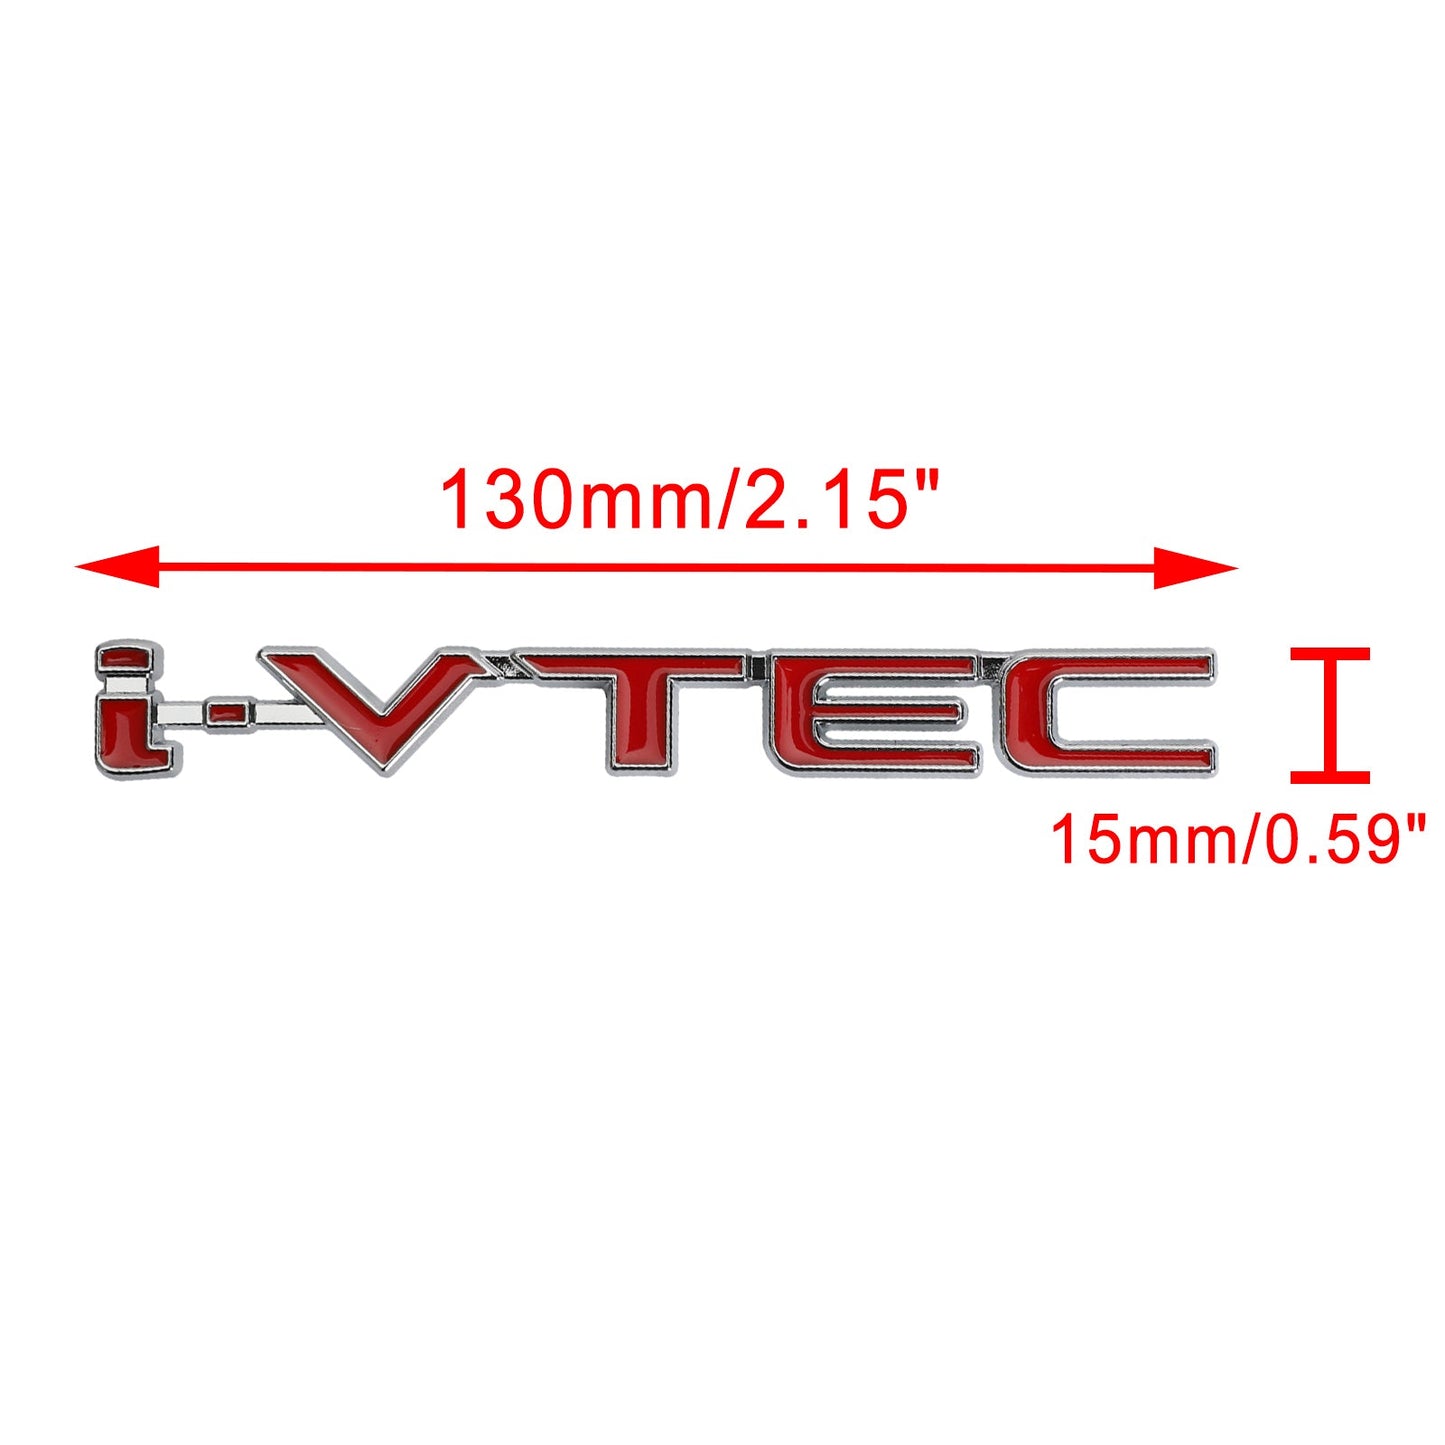 3D Métal i-VTEC Voiture Tronc Arrière Turbo Fender Emblème Autocollant Insigne Insigne Rouge et Ruban